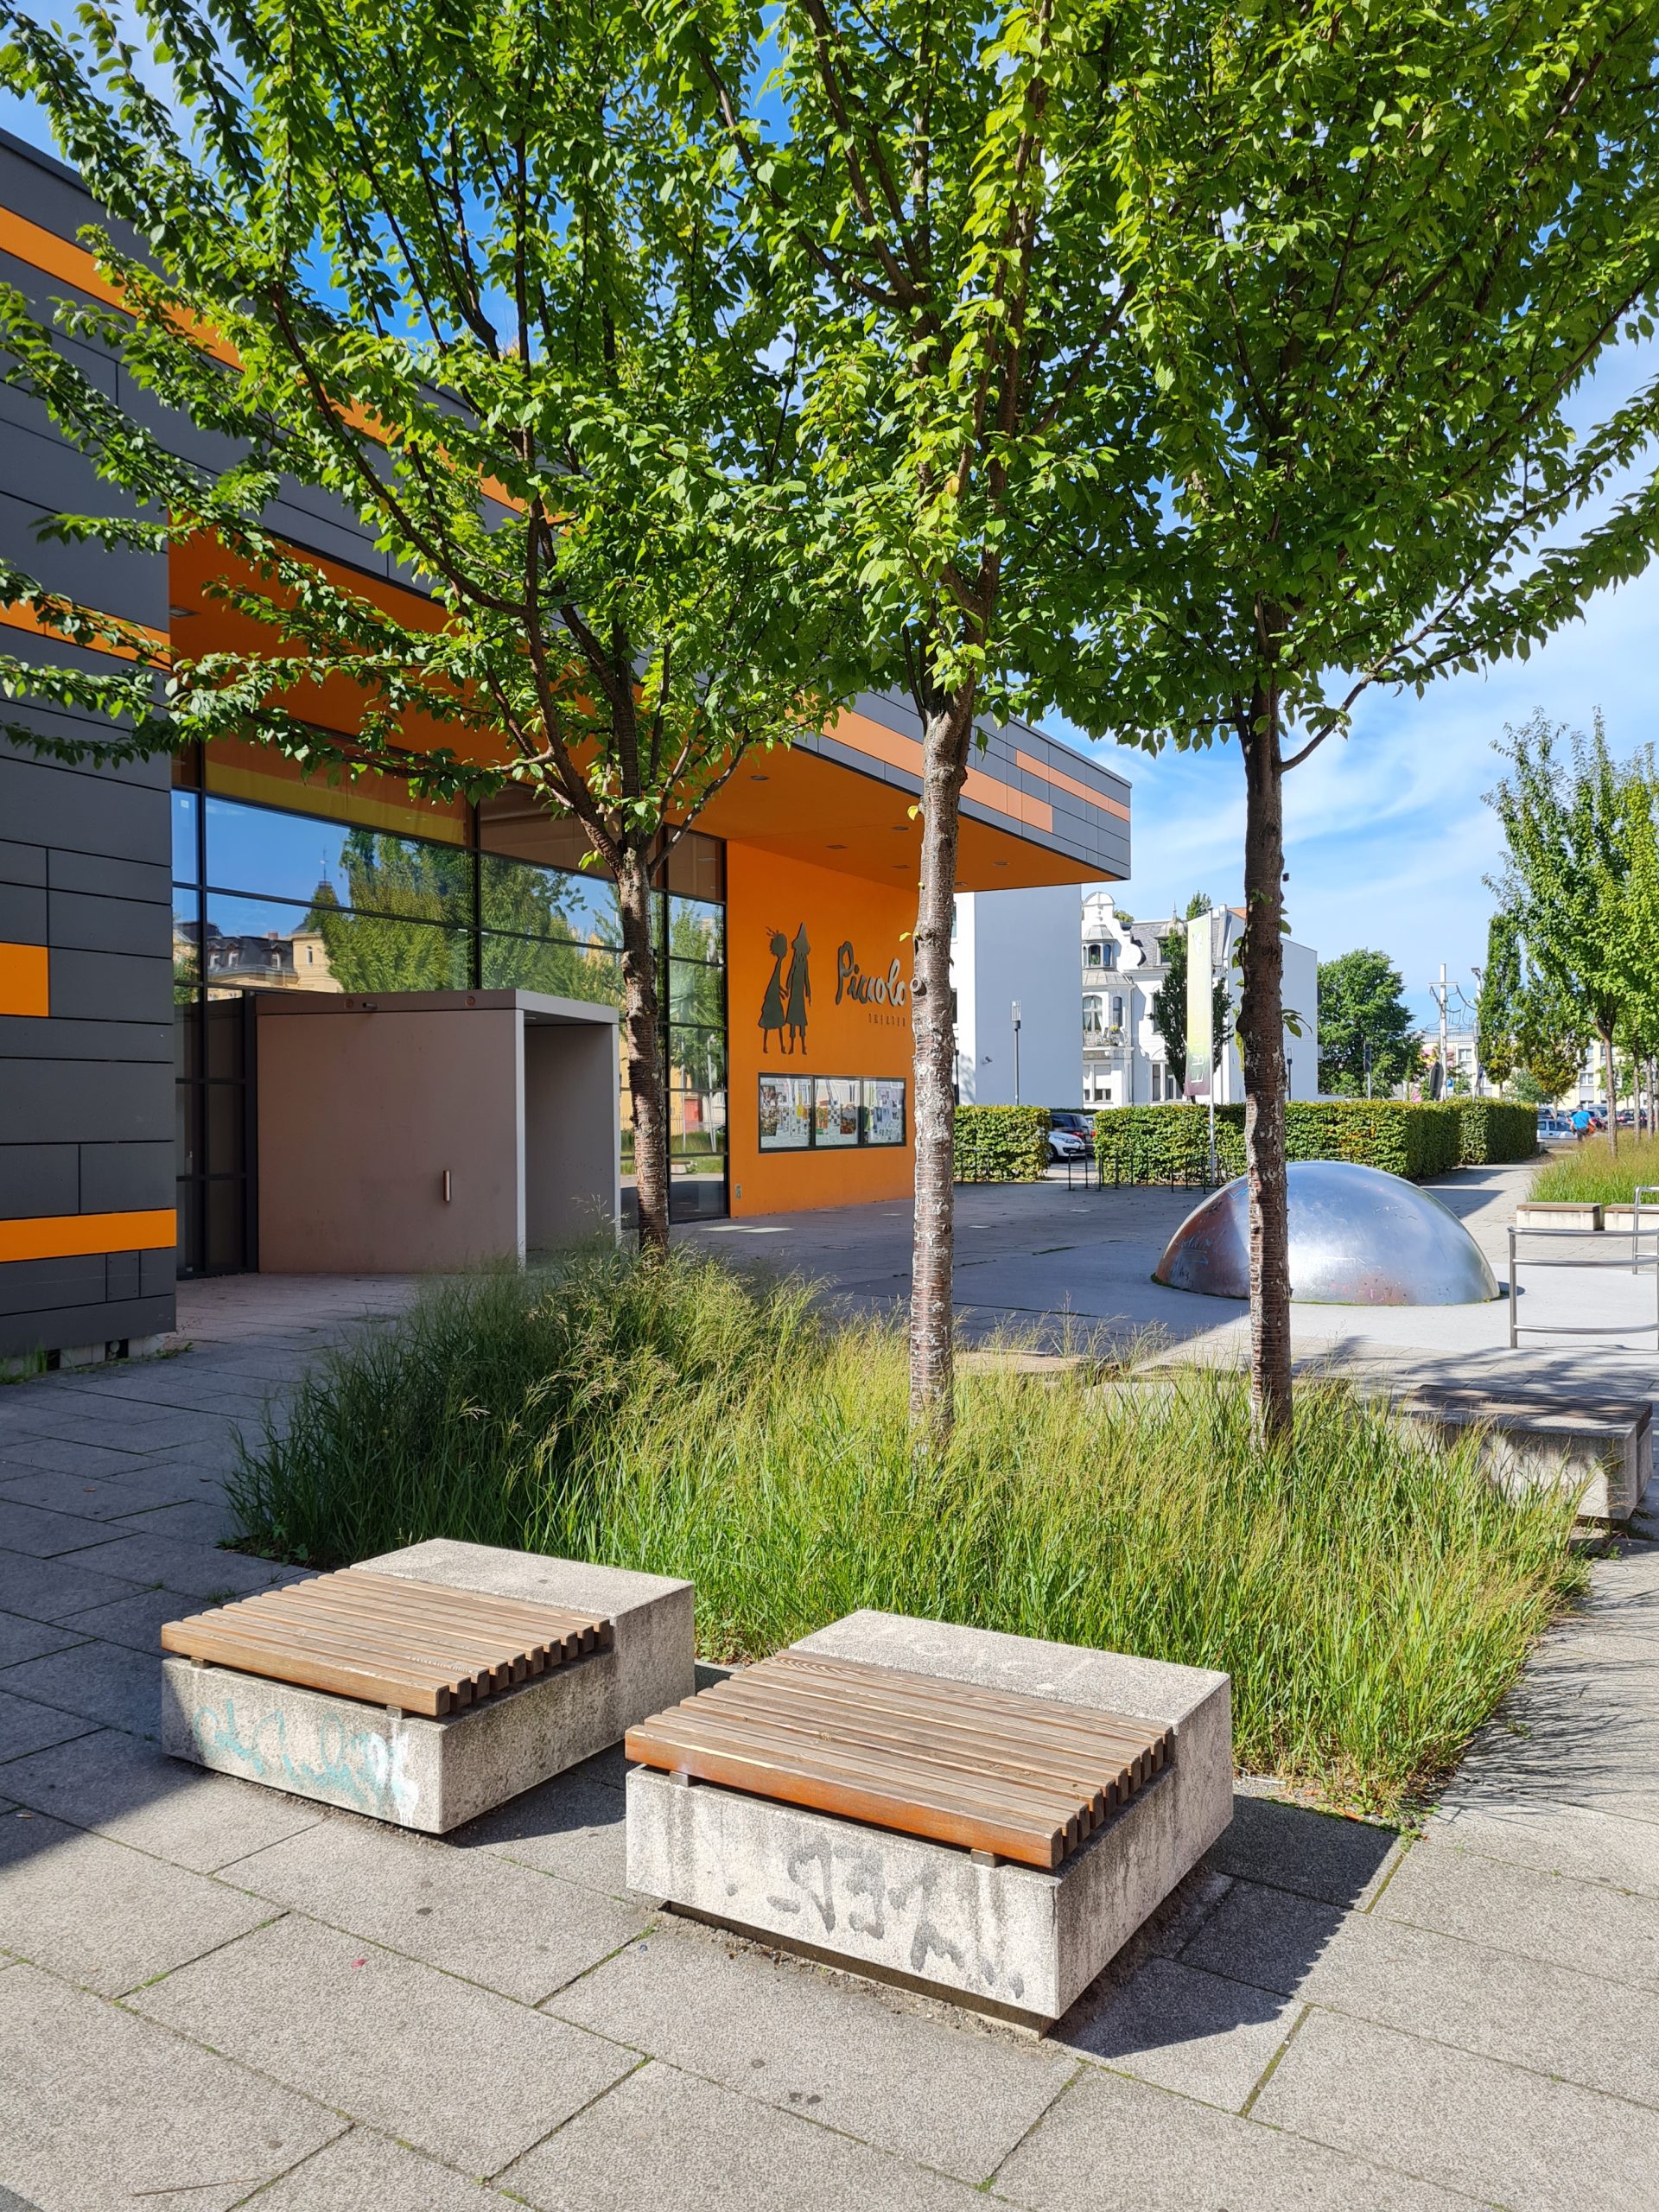 Das Bild zeigt drei Laubbäume auf einem großen Platz vor einer Veranstaltungshalle. Unter den Bäumen befindet sich eine Baumscheibe, die mit Gräsern bepfanzt ist. Davor stehen zwei Sitzmöglichkeiten aus Beton mit Holzverkleidung.